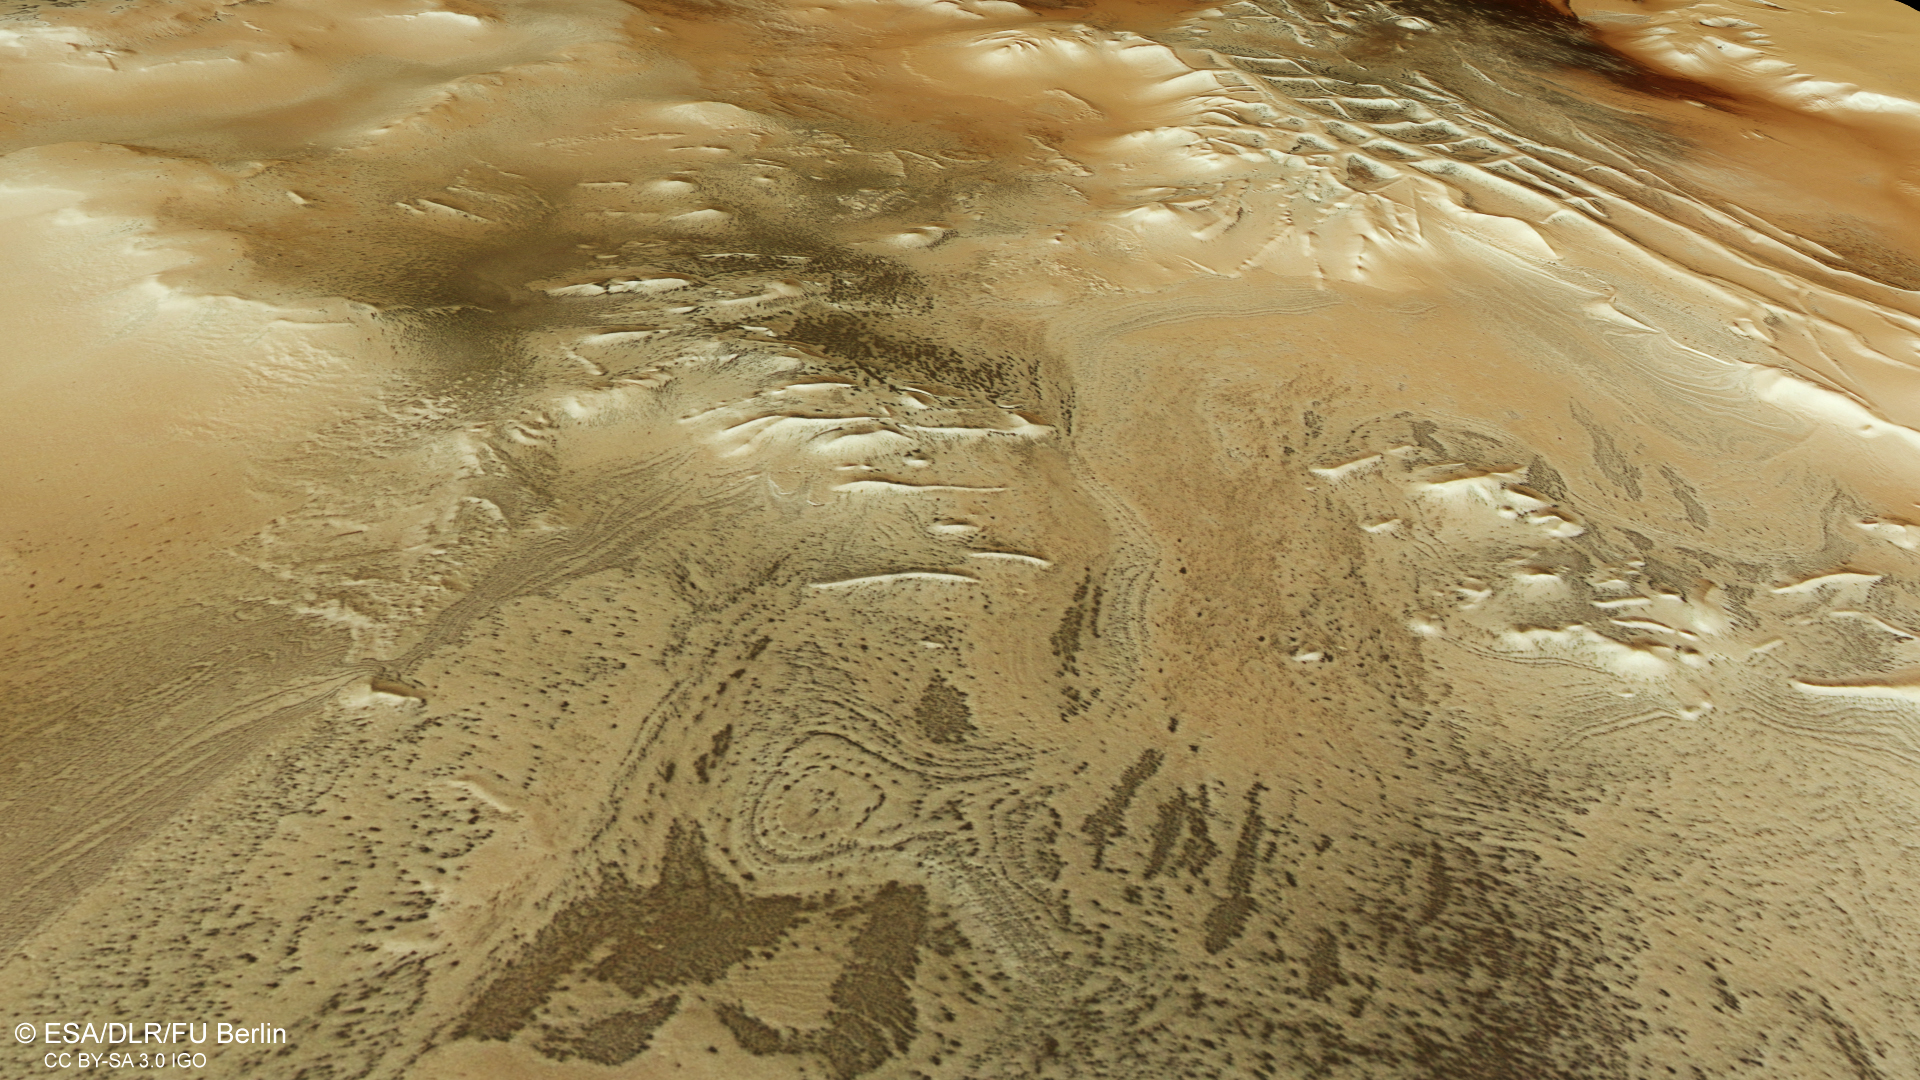 Цифрова модель утворення міста інків на Марсі, створена за останніми даними стереокамери високої роздільної здатності супутника Mars Express. На всьому зображенні видно сліди чорних «павуків», фактично продукту запорошених газових гейзерів. Зображення: ESA/DLR/FU Berlin